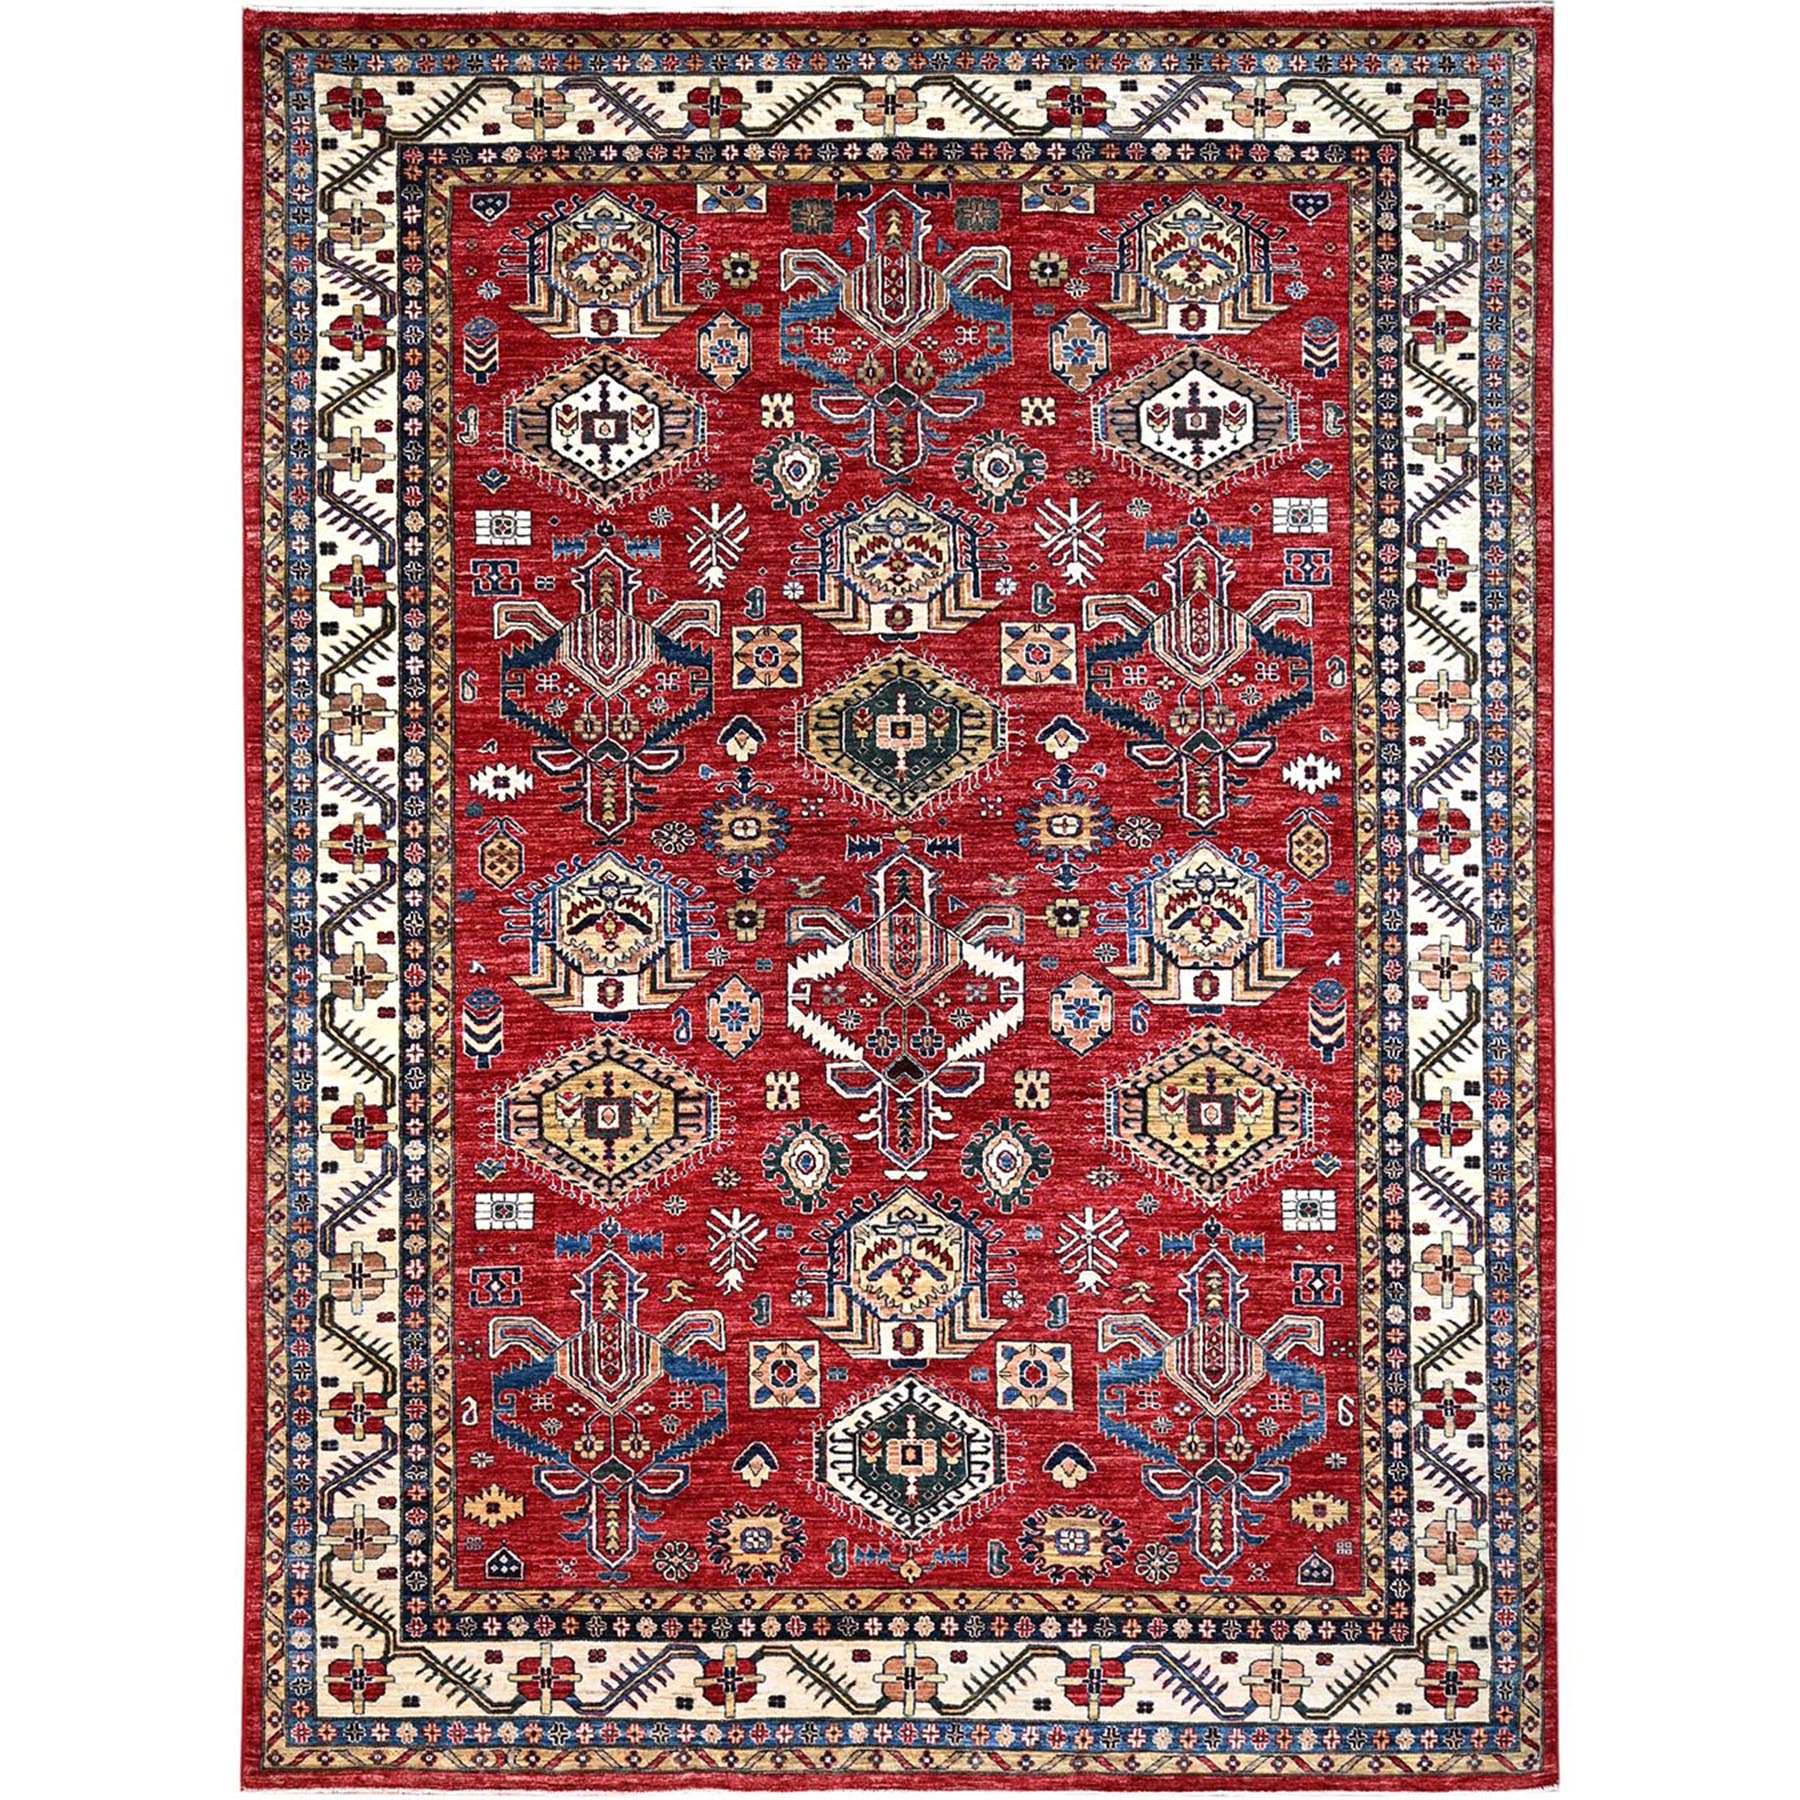 Heirloom Red, Hand Knotted, Vegetable Dyes, Pure Wool, Afghan Super Kazak, Denser Weave All Over Design, Oriental Rug